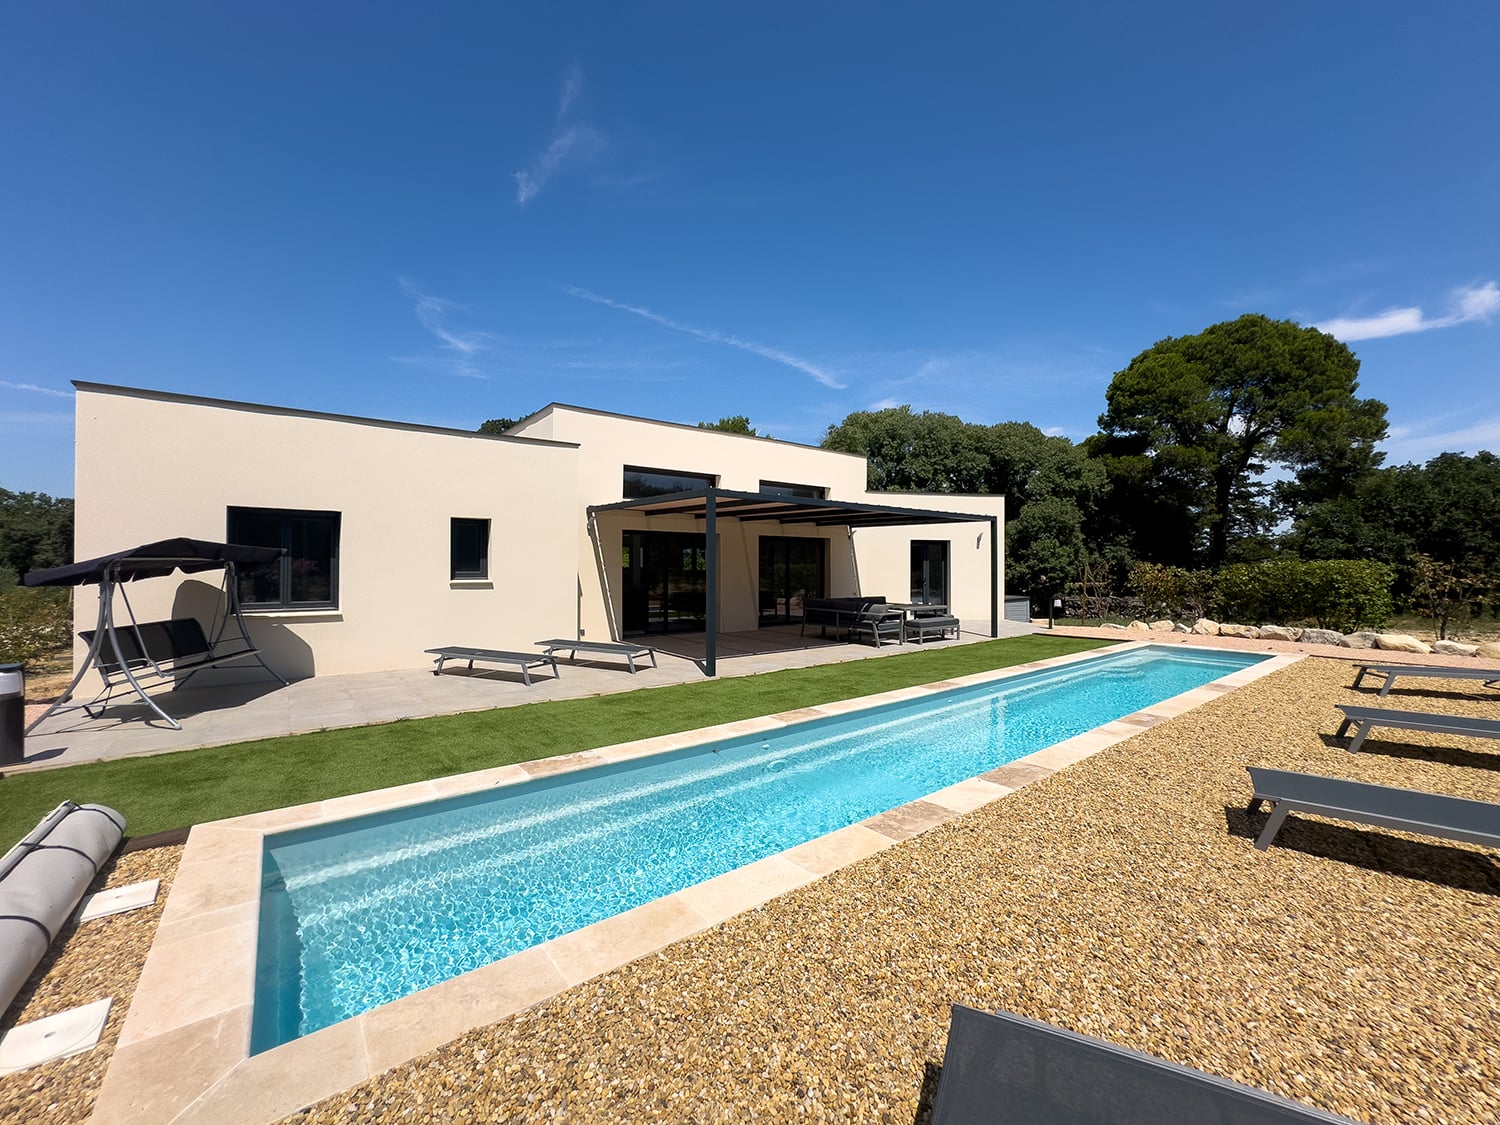 Holiday villa near Avignon with private pool